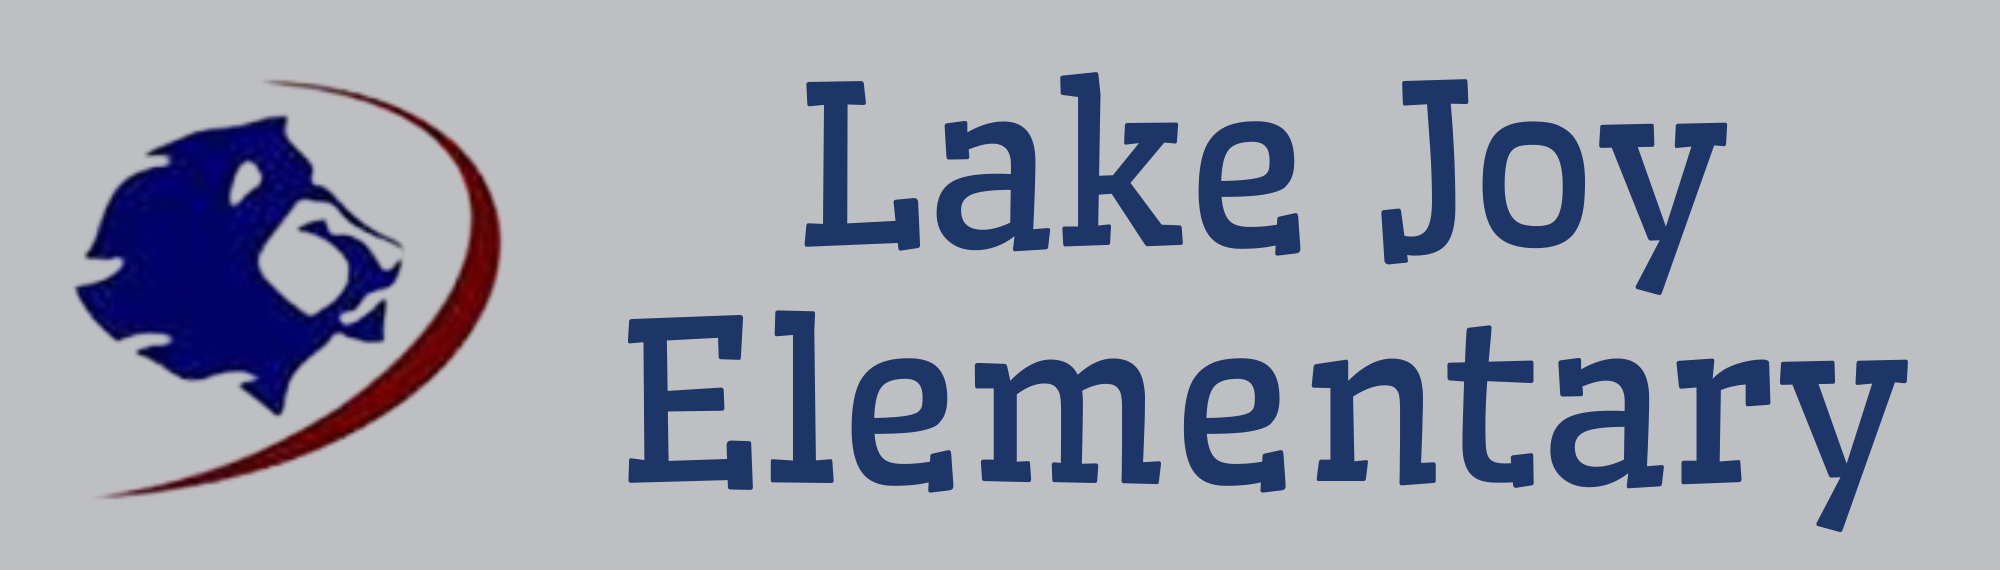 Lake Joy Elementary